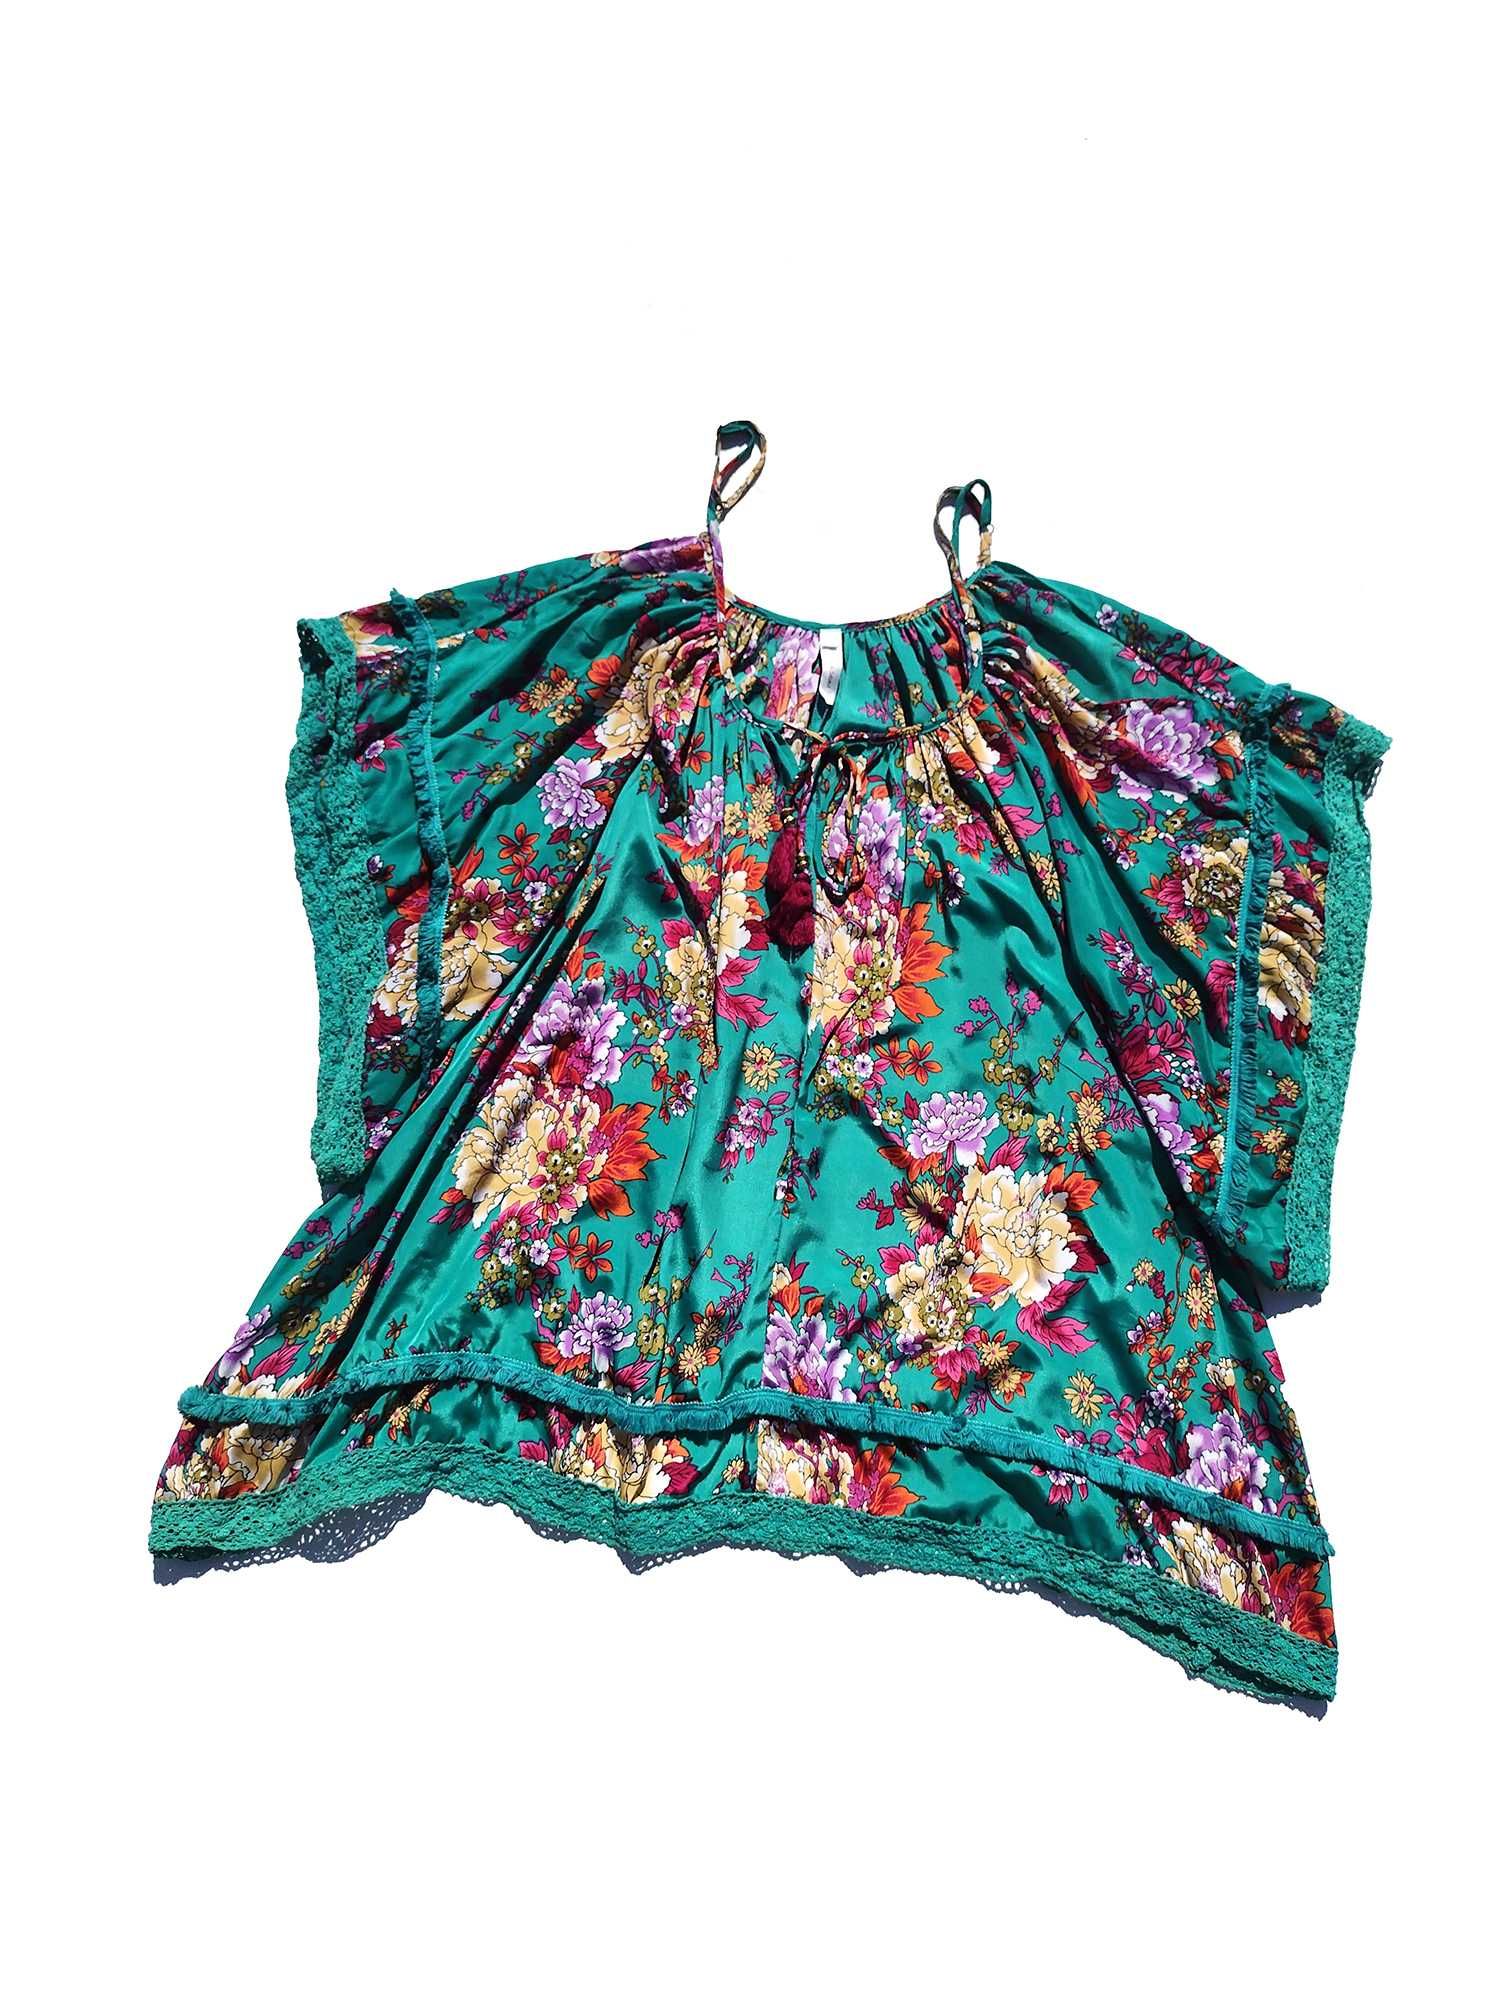 Шикарная яркая разноцветная блуза туника TU цветочный принт XL-5XL